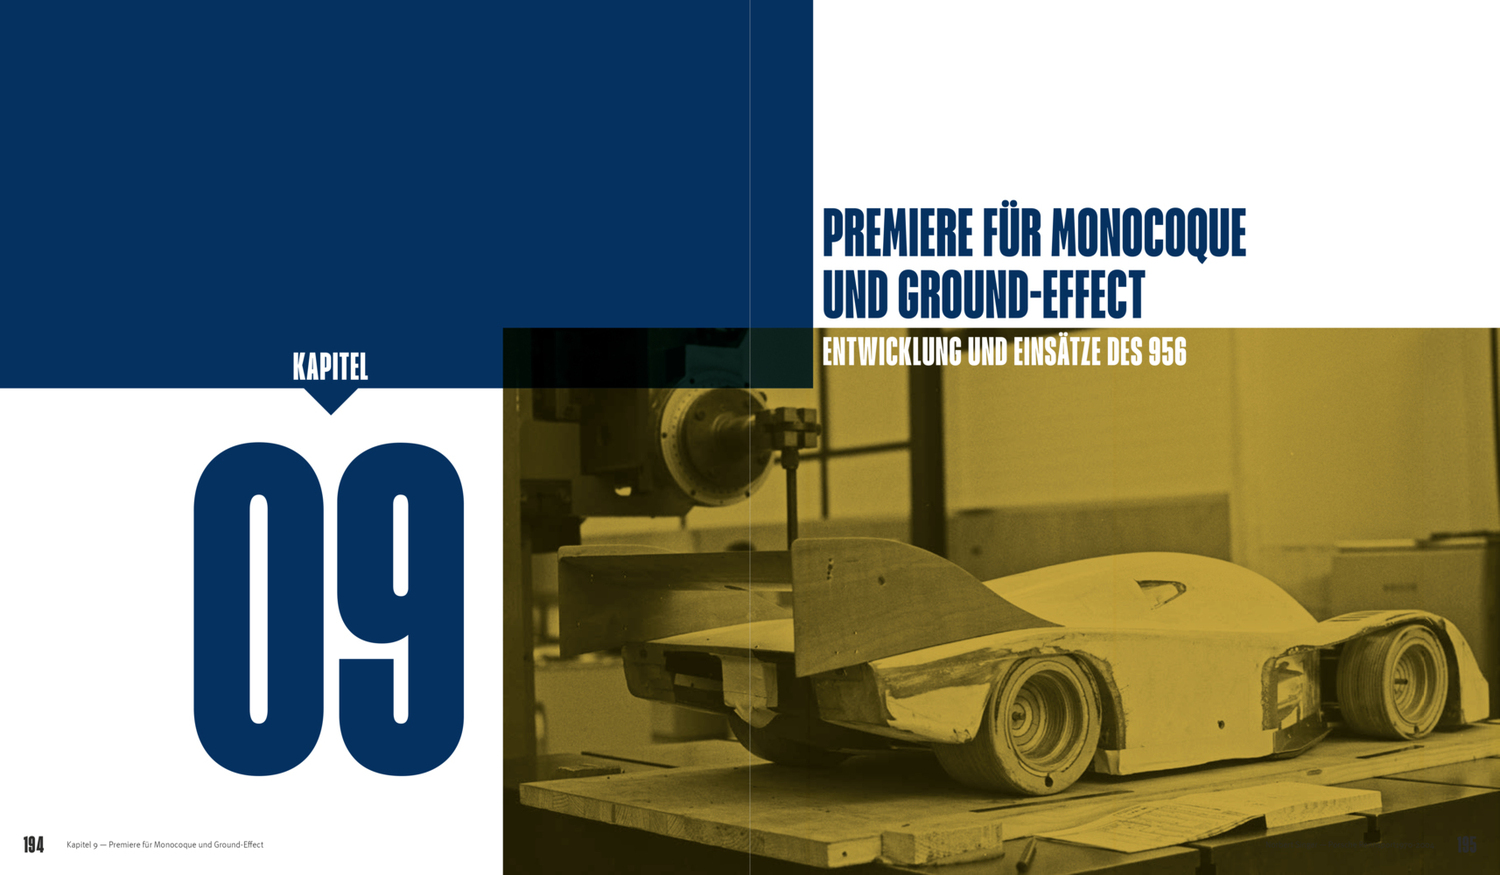 Bild: 9783945390061 | Norbert Singer - Porsche Rennsport 1970-2004 | Wilfried Müller (u. a.)